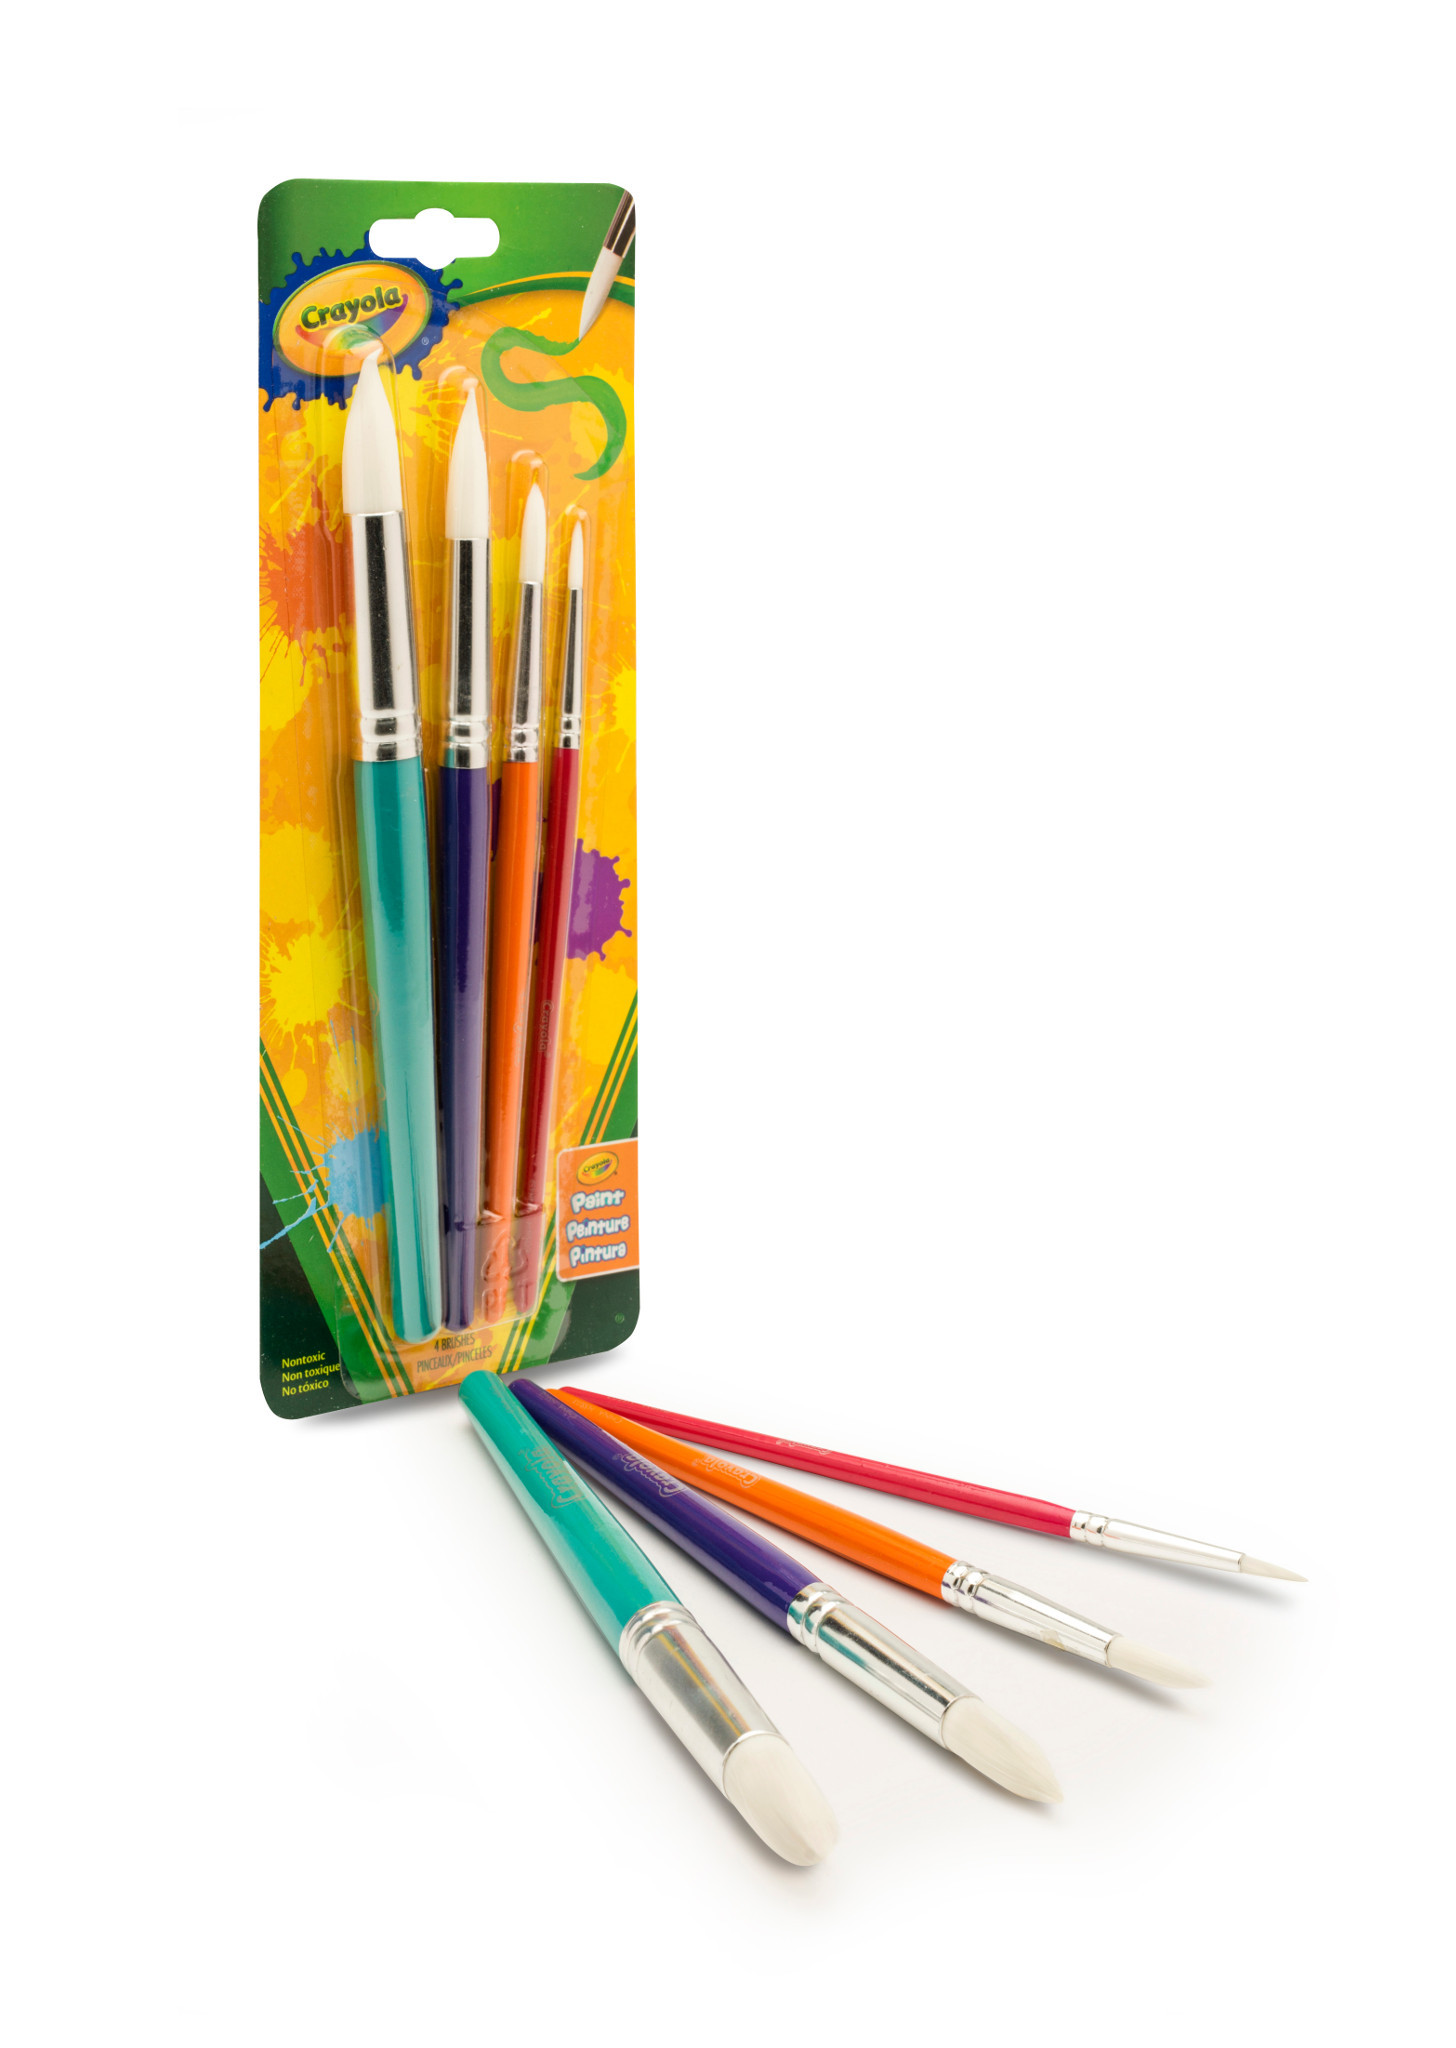 Crayola 4 Count Round Paint Brush Set - image 4 of 6